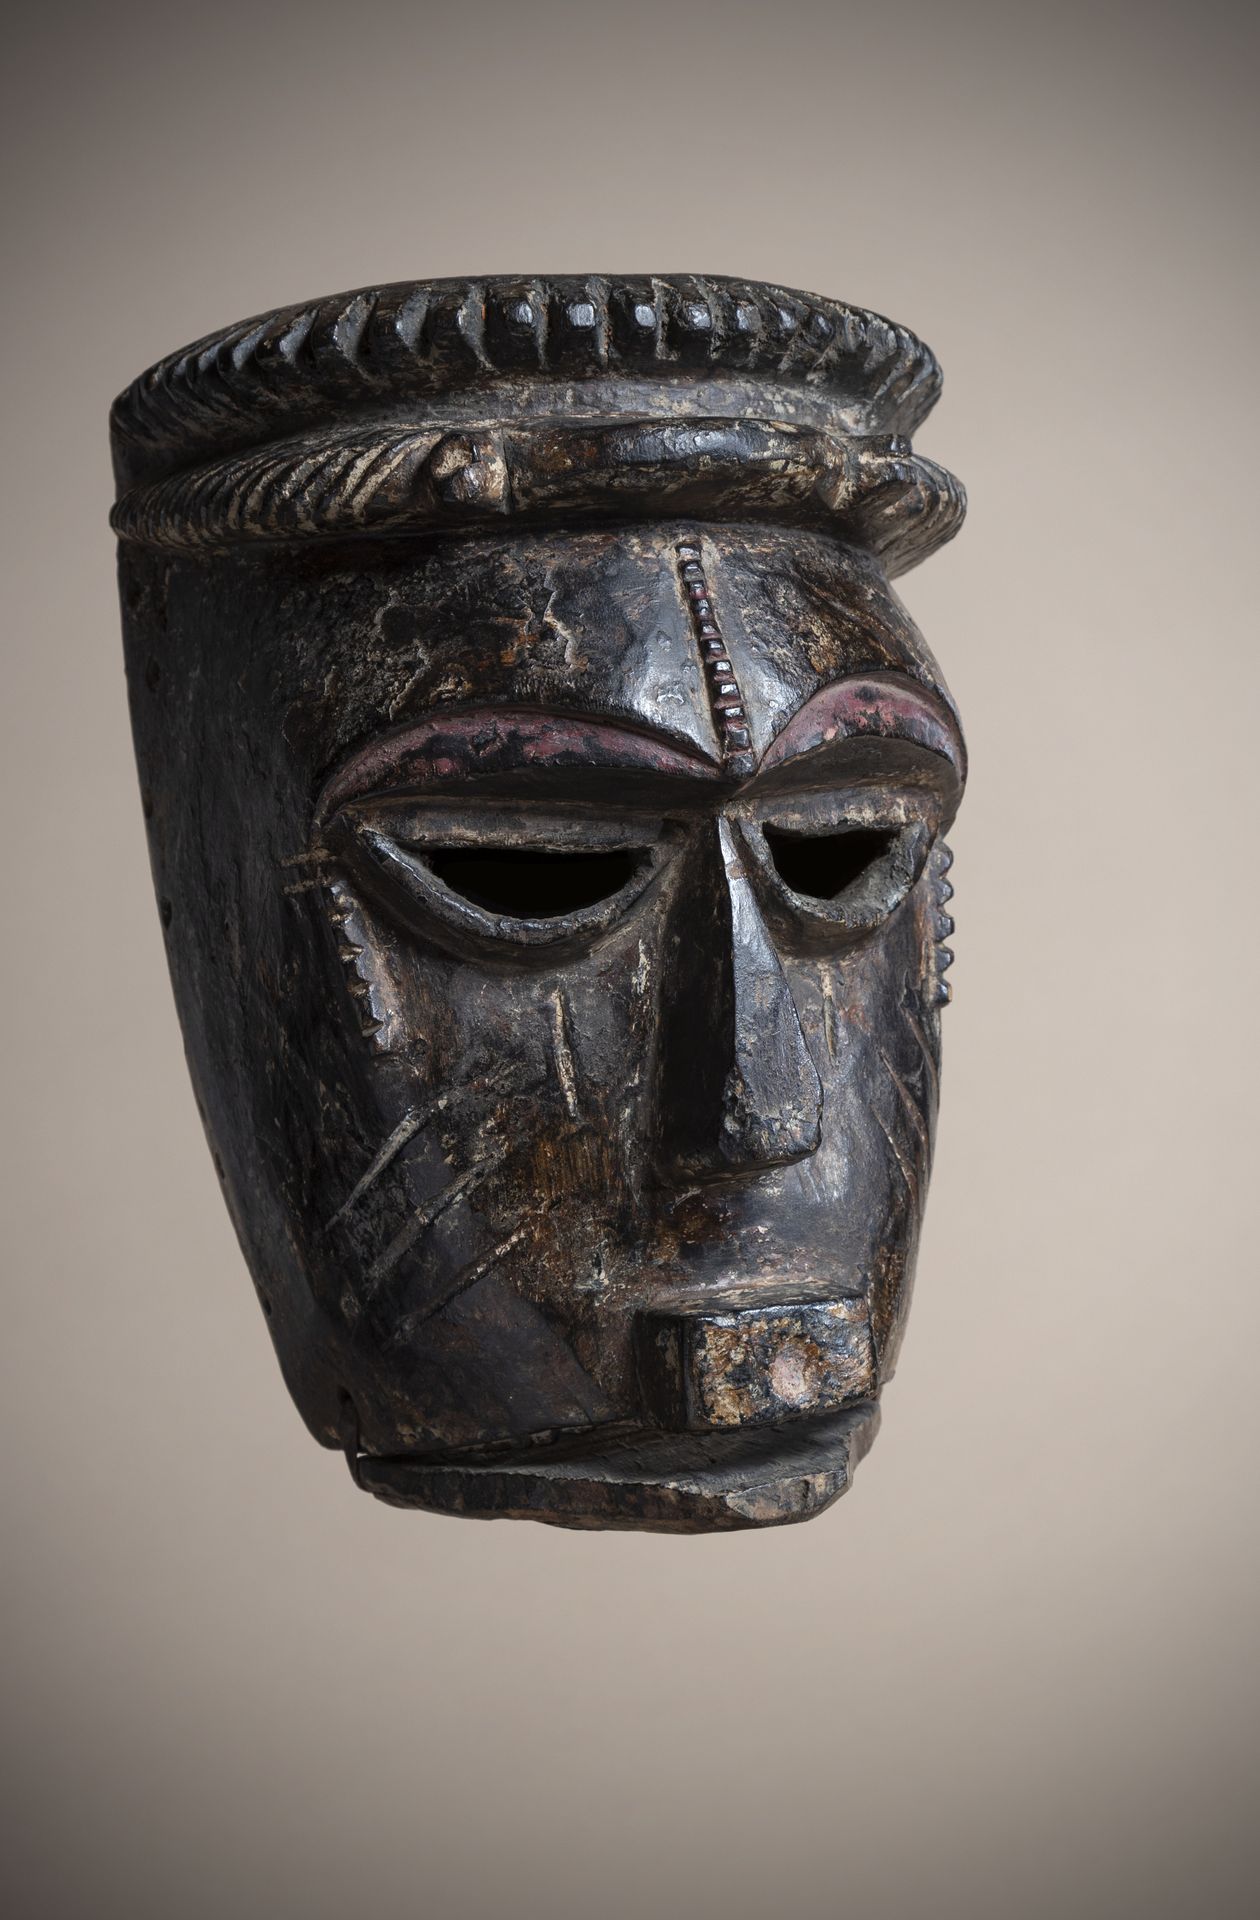 Null IBIBIO (尼日利亚)

带有深棕色铜锈的面具，活动的下巴上戴着一个双缺口的皇冠作为头饰

高度：26厘米